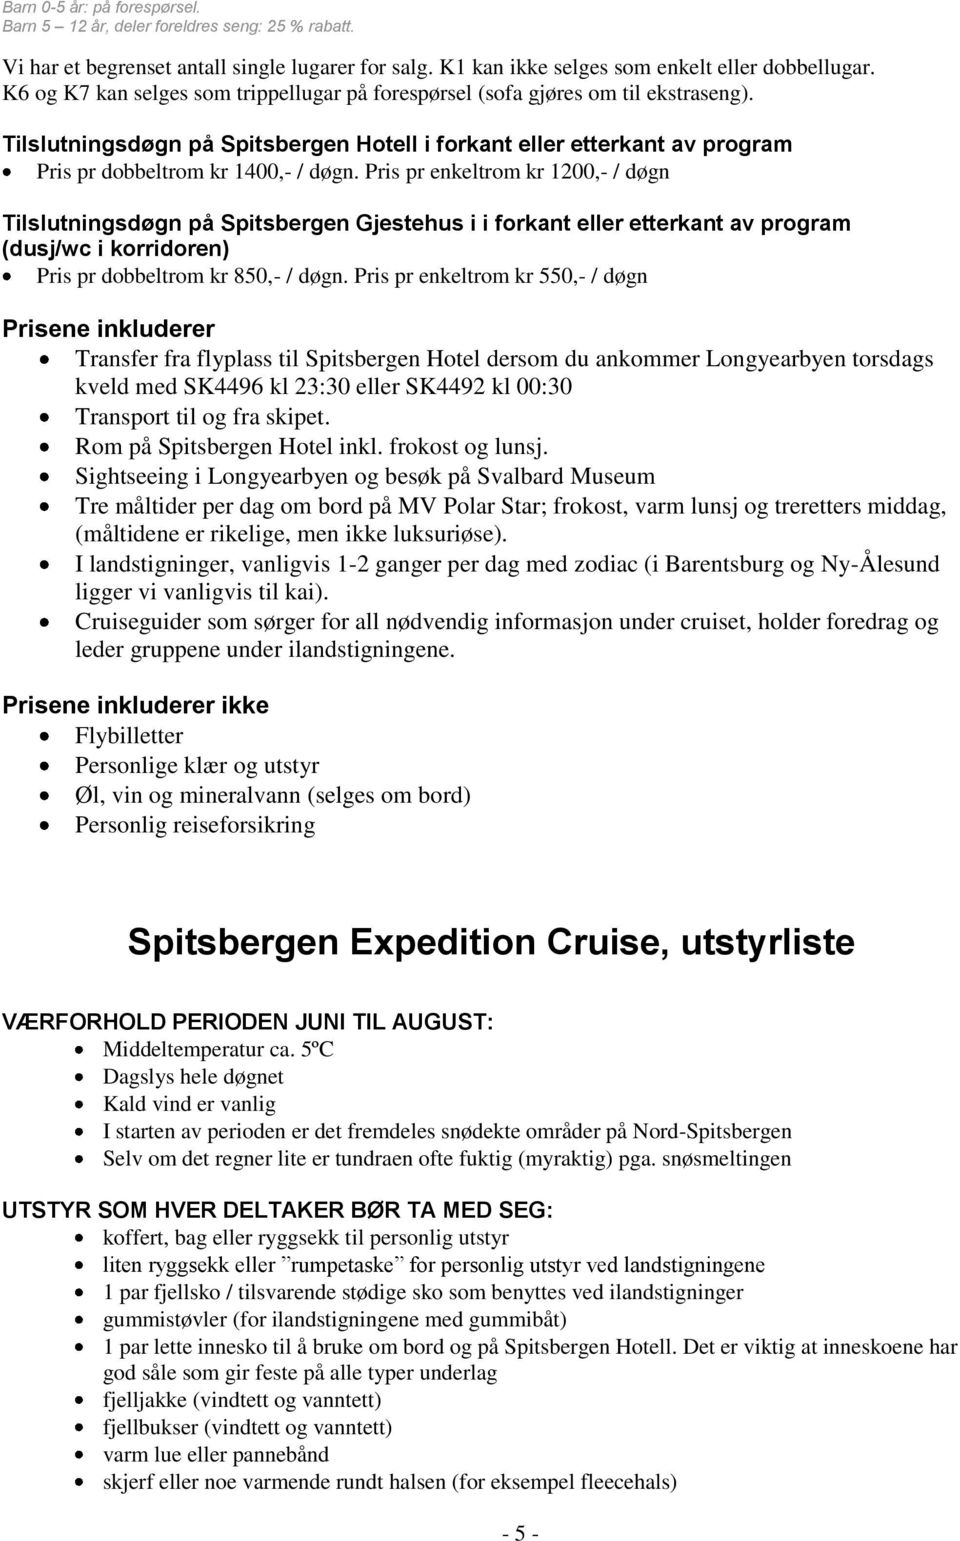 Pris pr enkeltrom kr 1200,- / døgn Tilslutningsdøgn på Spitsbergen Gjestehus i i forkant eller etterkant av program (dusj/wc i korridoren) Pris pr dobbeltrom kr 850,- / døgn.